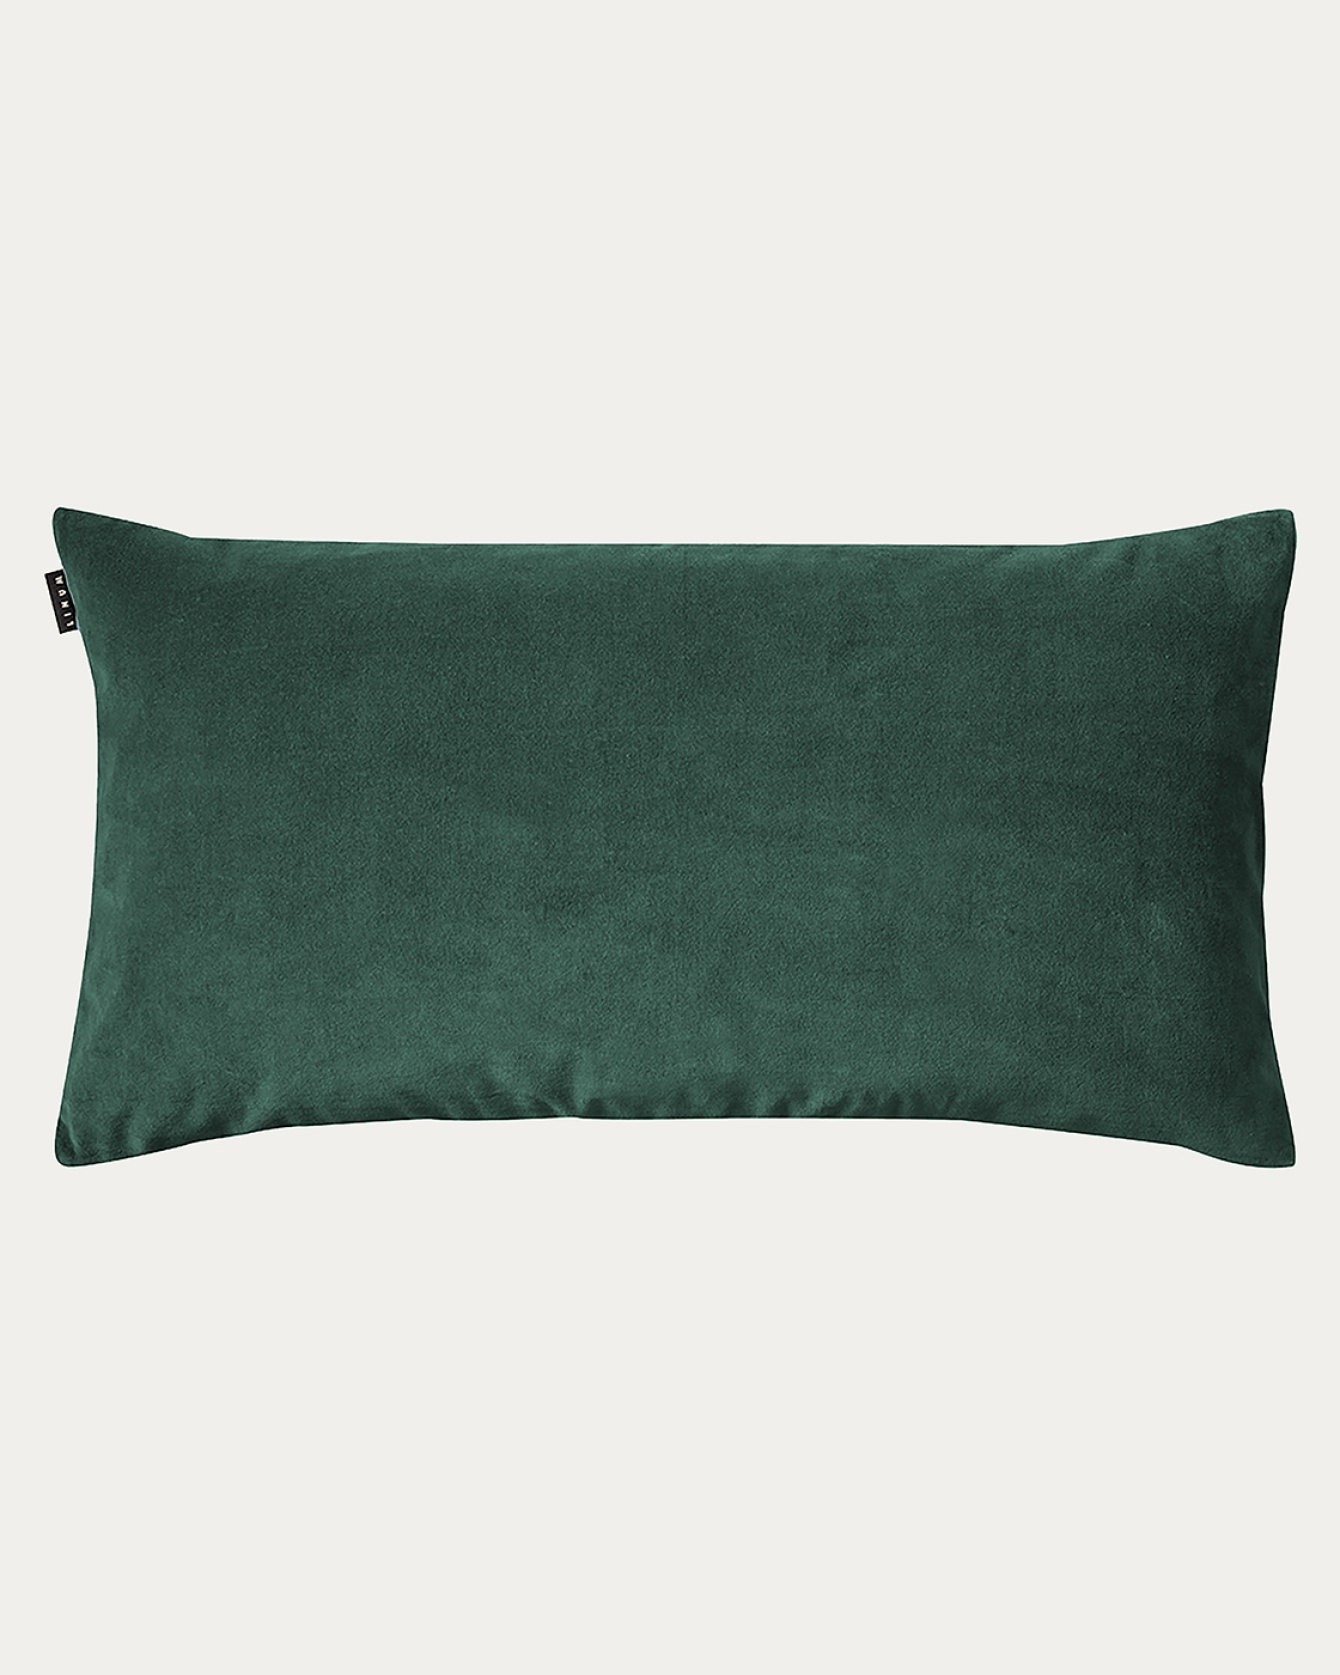 PAOLO Cushion cover 50x90 cm Deep emerald green